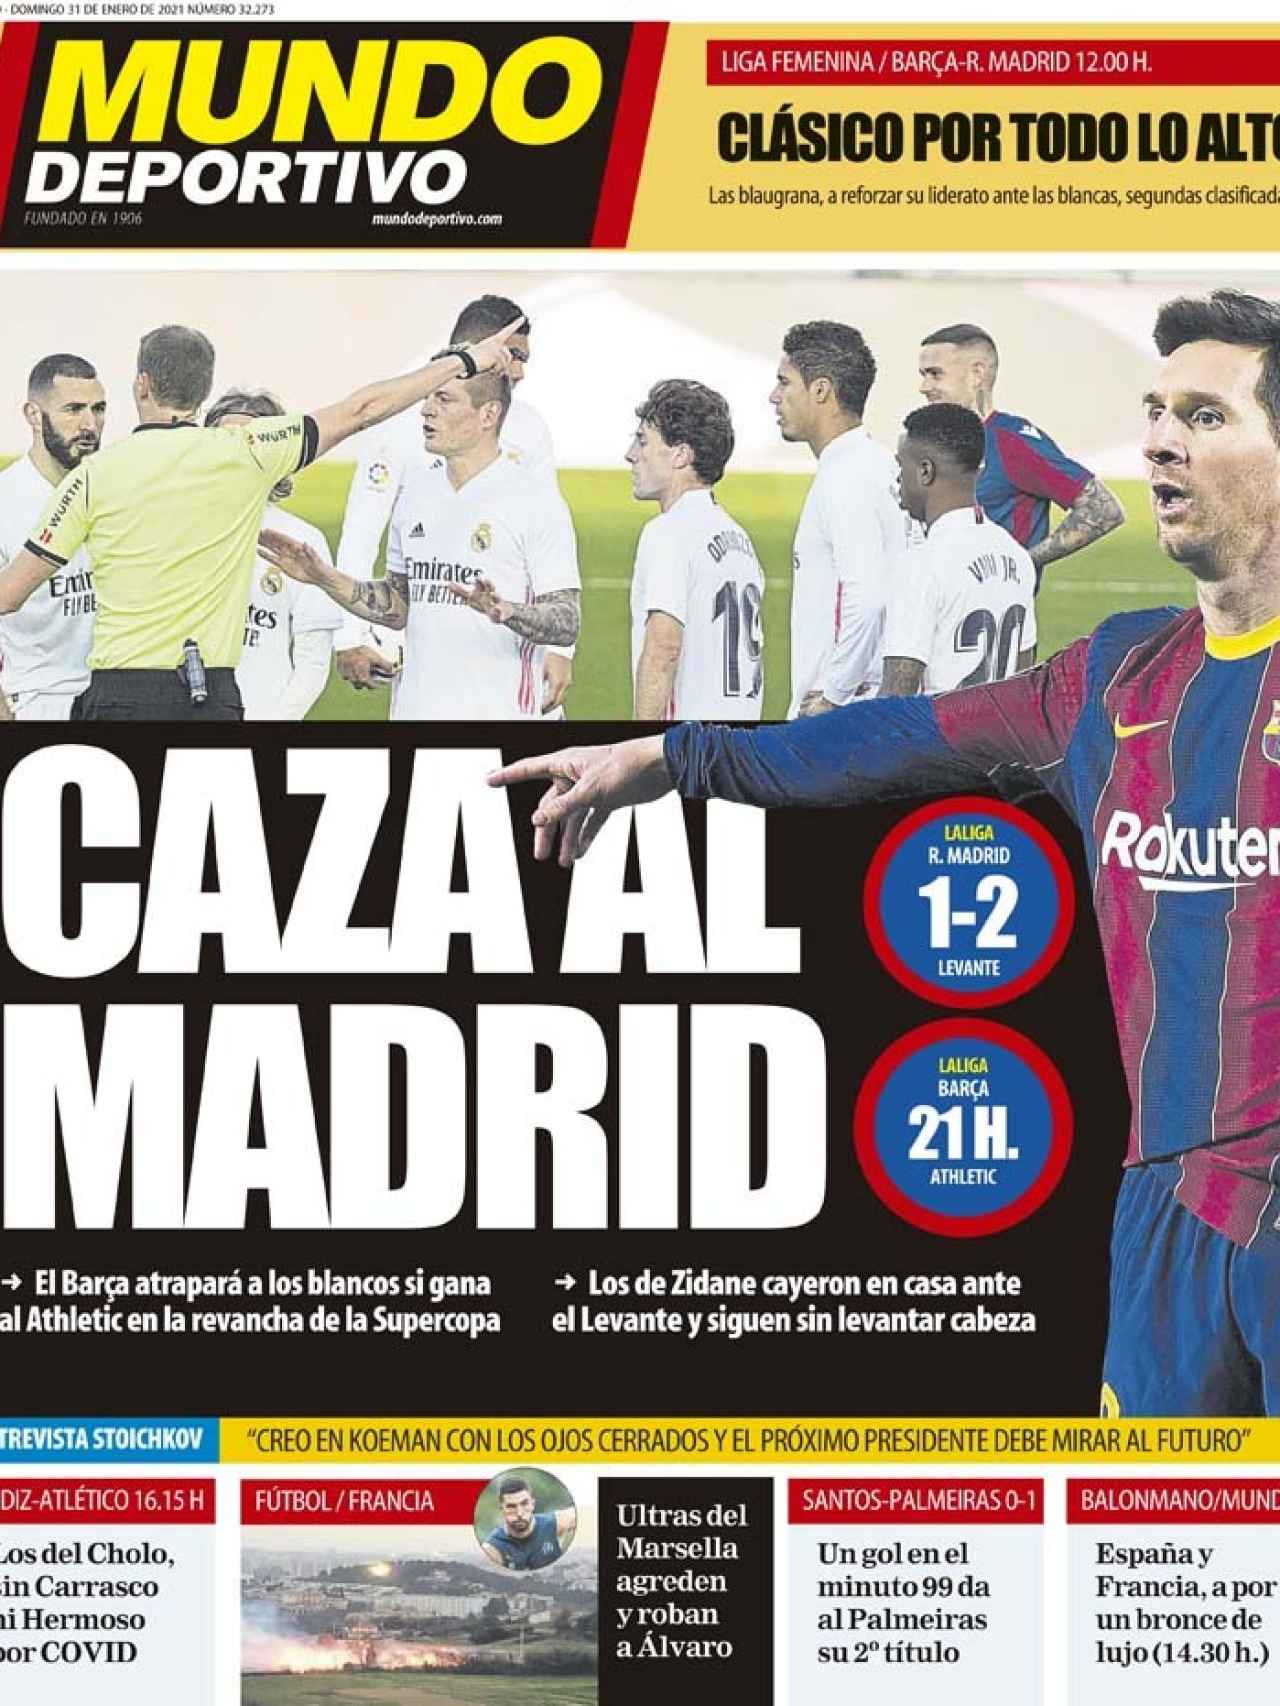 La portada del diario Mundo Deportivo (31/01/2021)